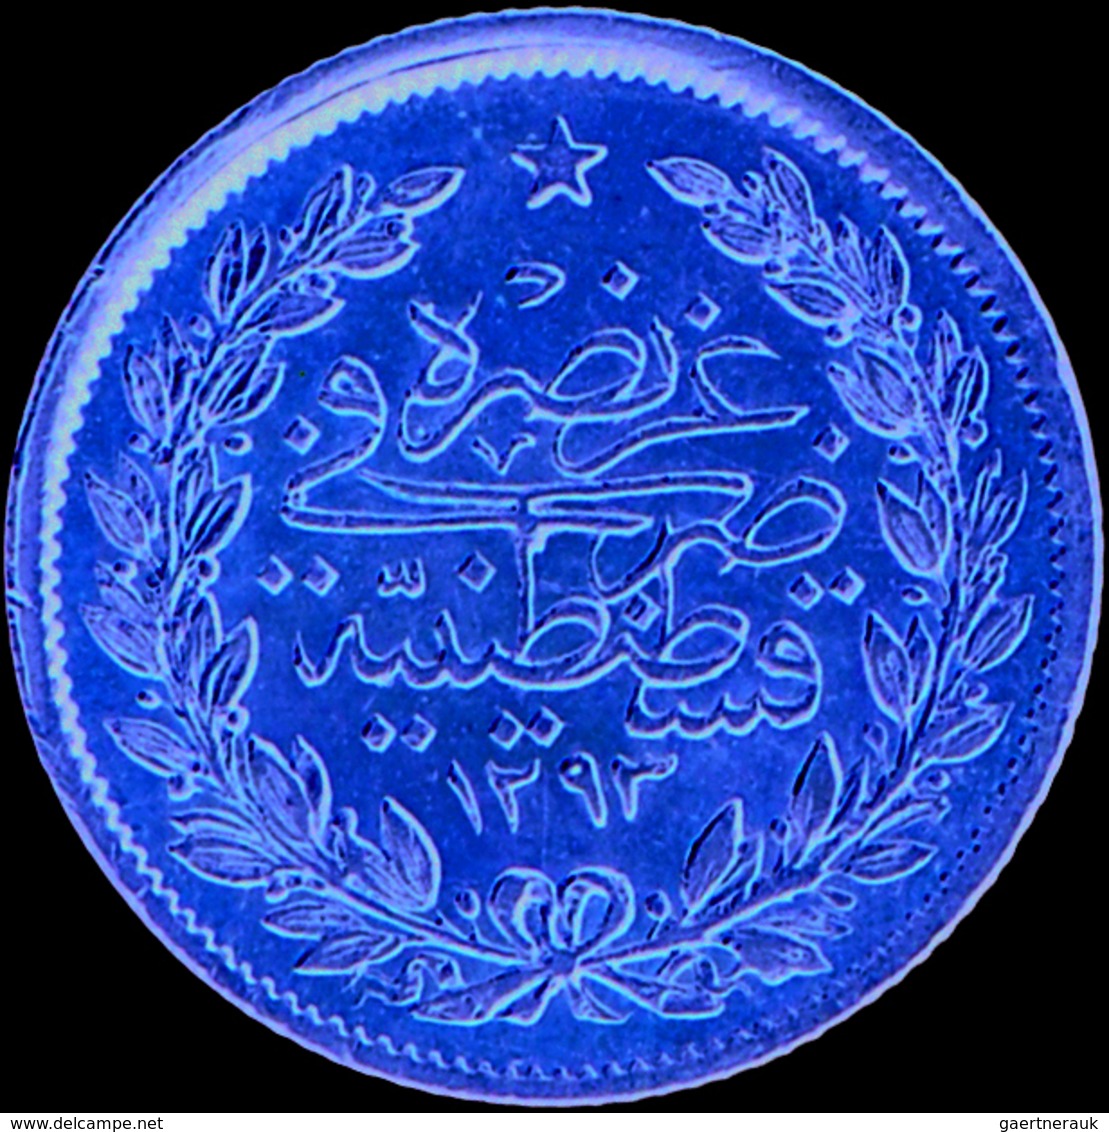 Türkei - Anlagegold: Abdul Hamid II. 1876-1909 (1293-1327 AH): 50 Kurush 1887 (AH 1293, Jahr 12), KM - Turquie